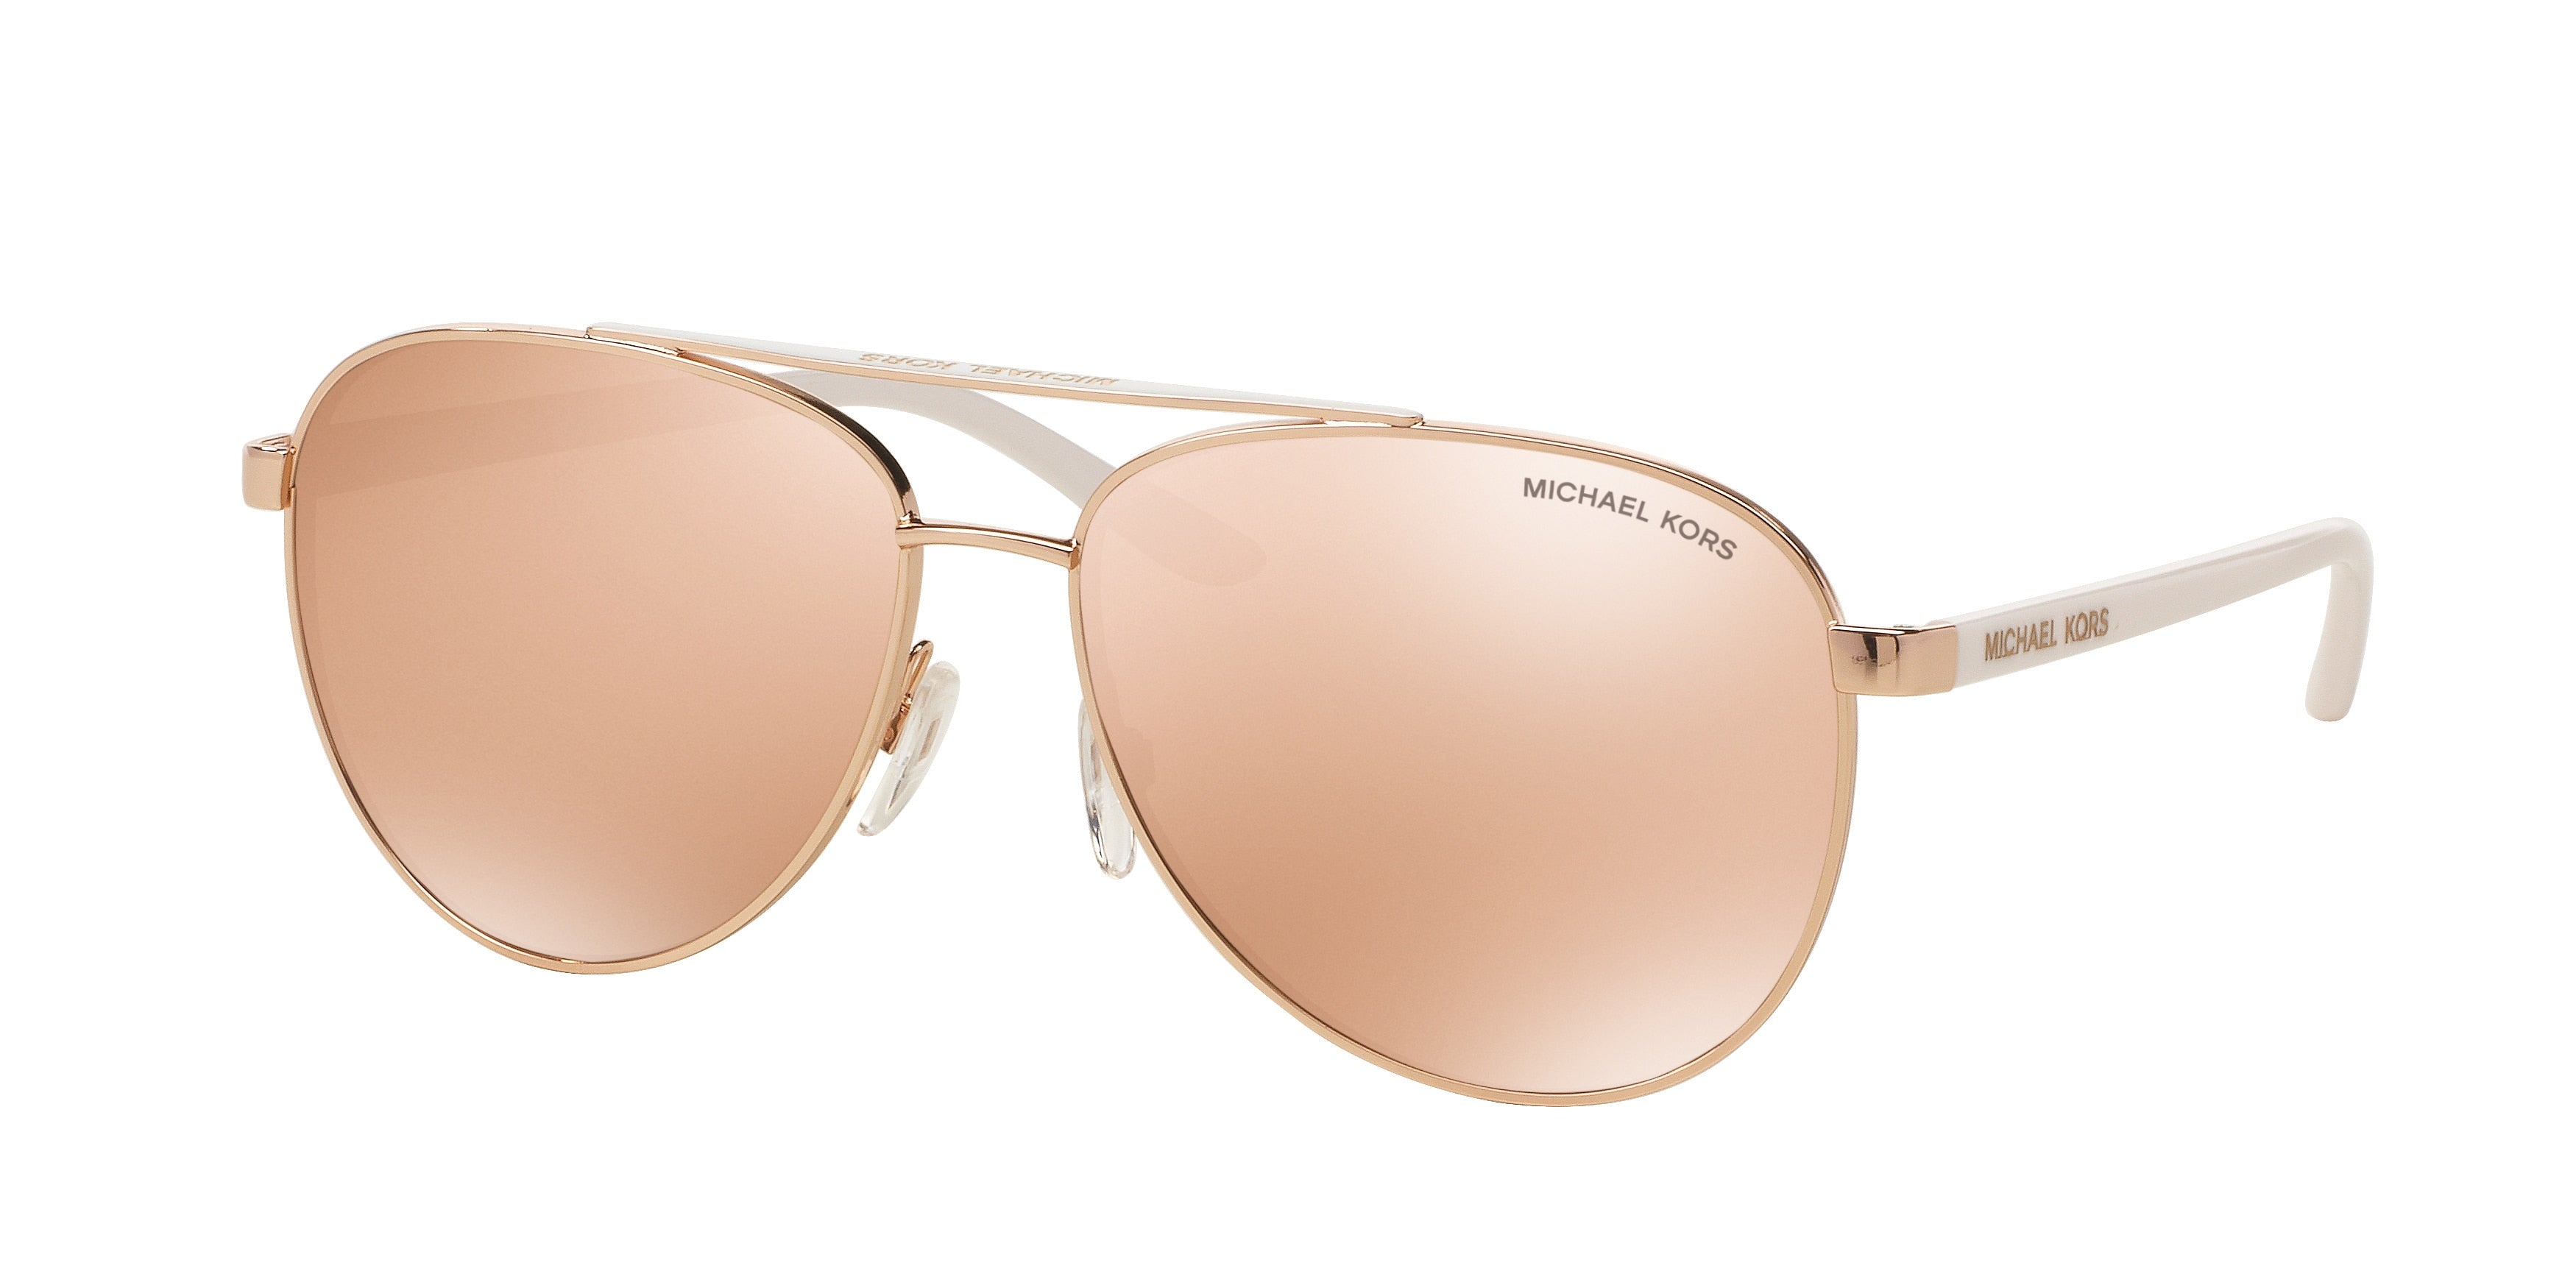 Michael Kors HVAR MK5007 Pilot Sunglasses  1080R1-Rose Gold 59-135-14 - Color Map Gold